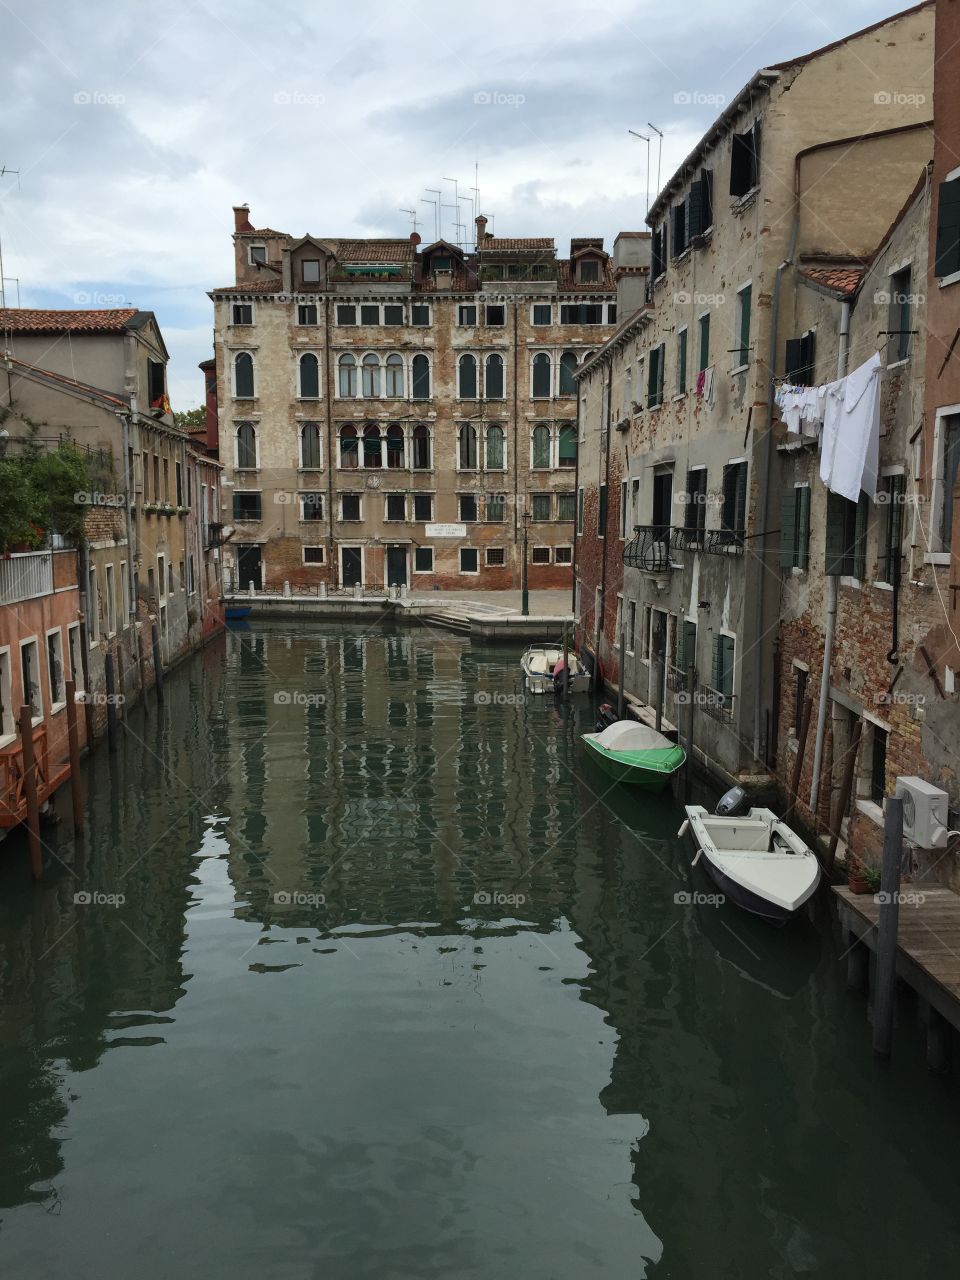 Boat in Venice 